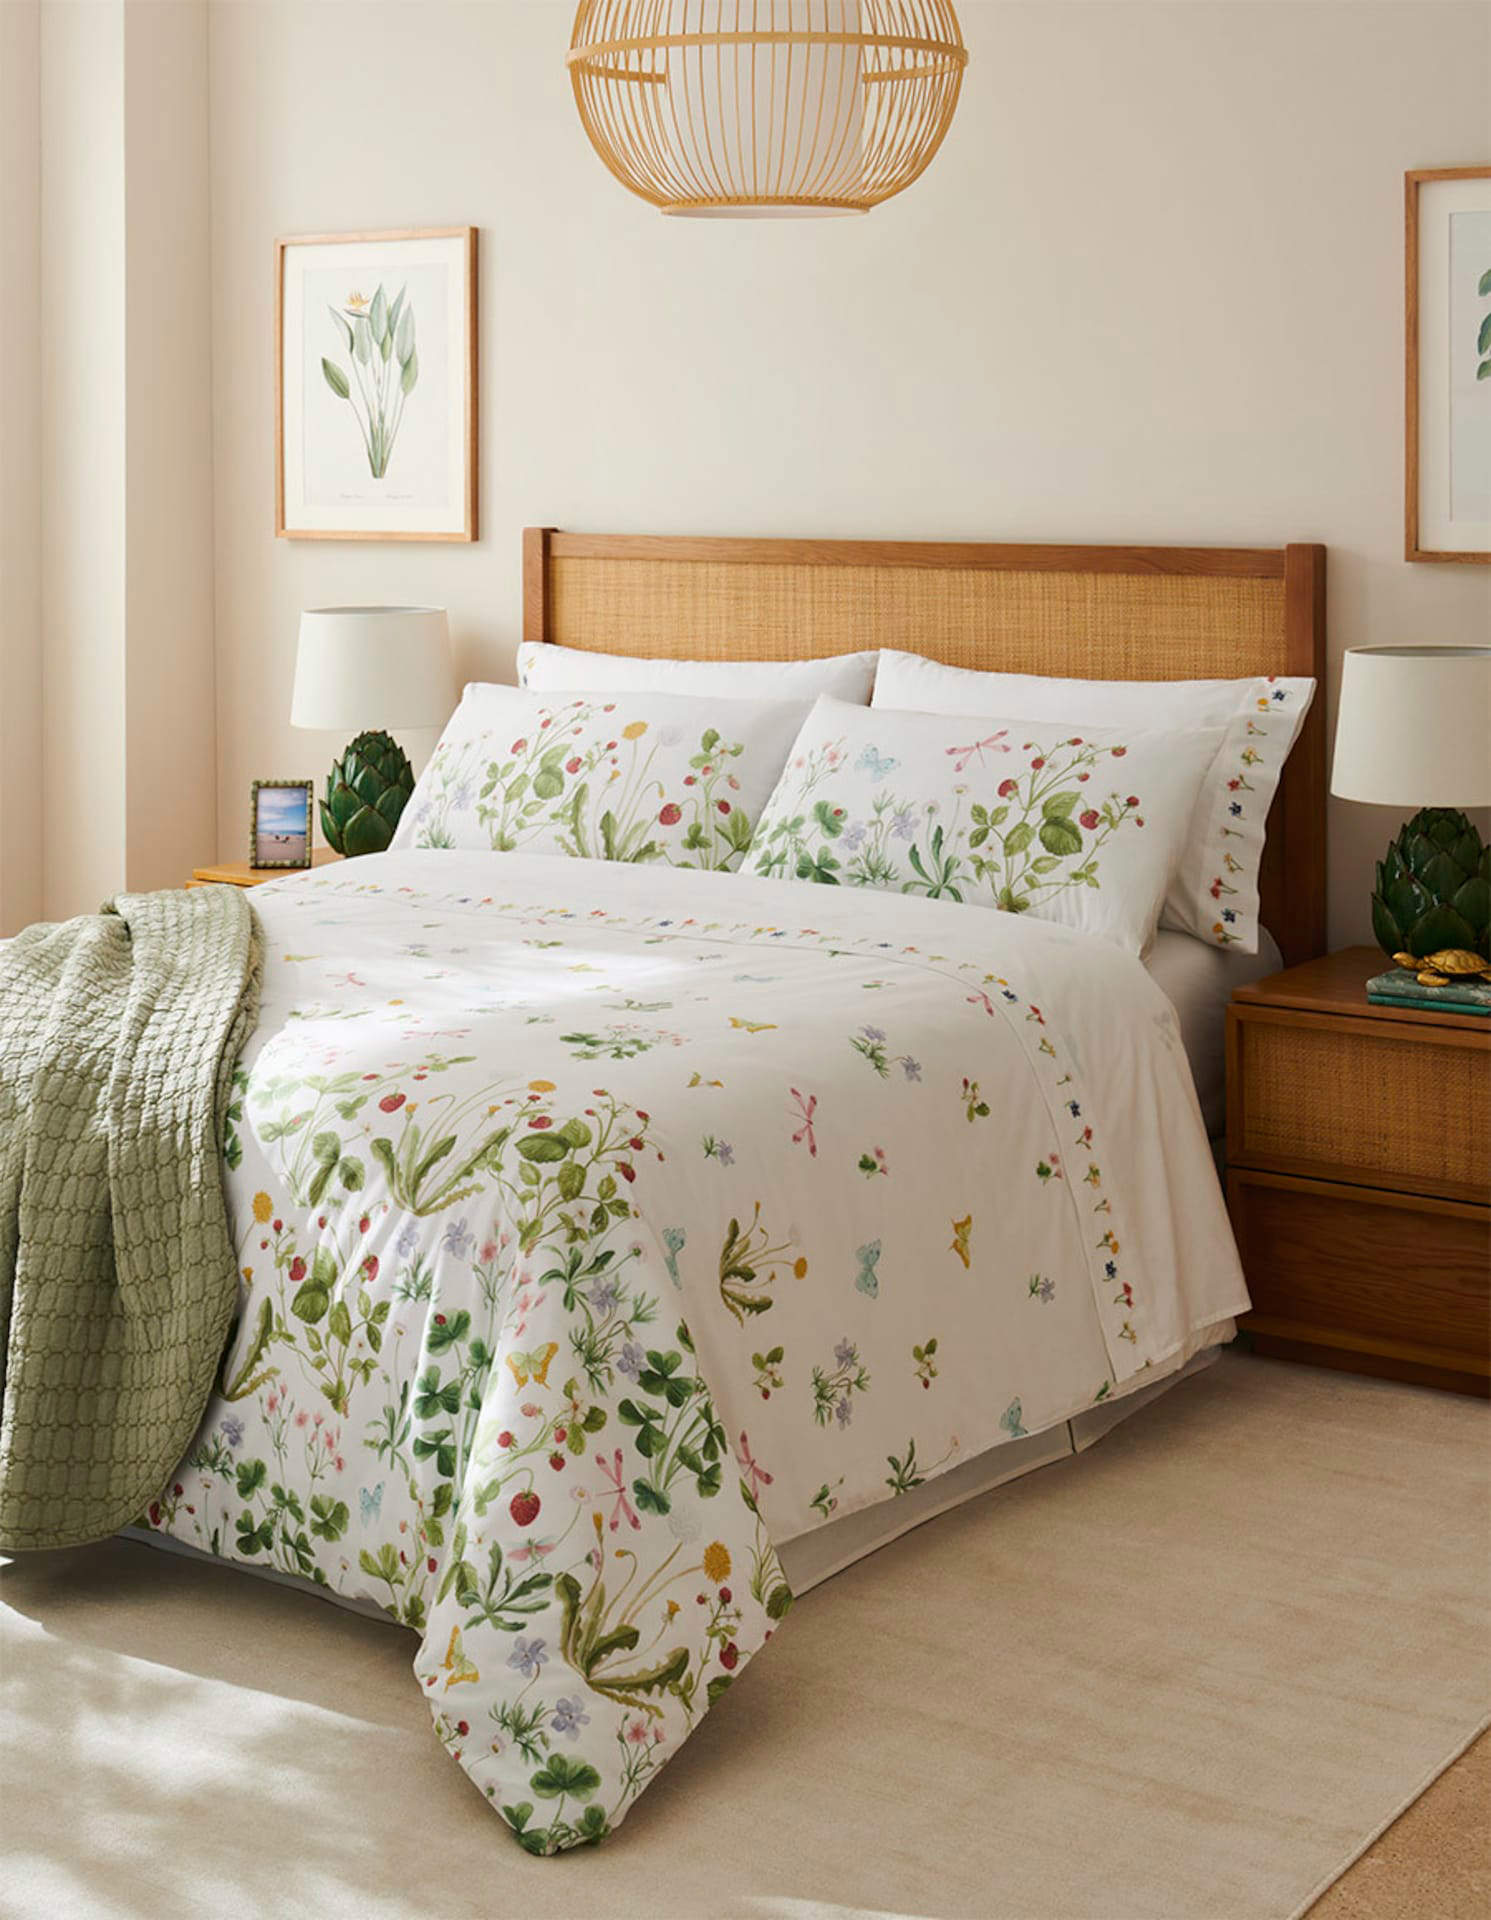 Dormitorio con muebles de madera y ratán y ropa de cama de flores.